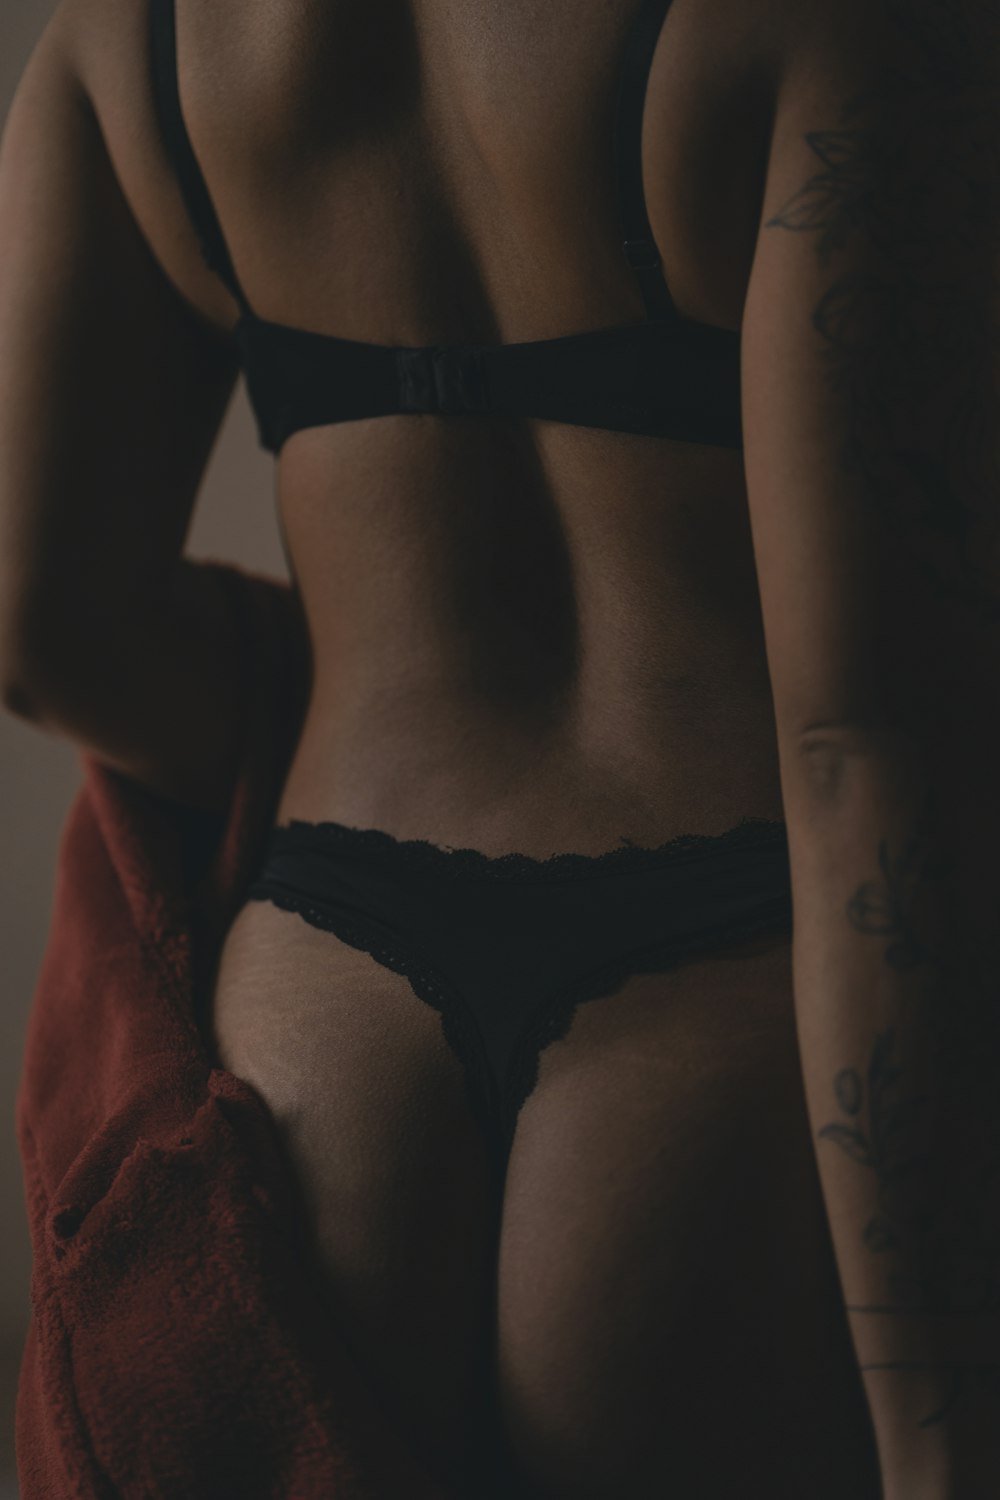 Foto mujer en bragas de encaje negro – Imagen interior gratis Unsplash